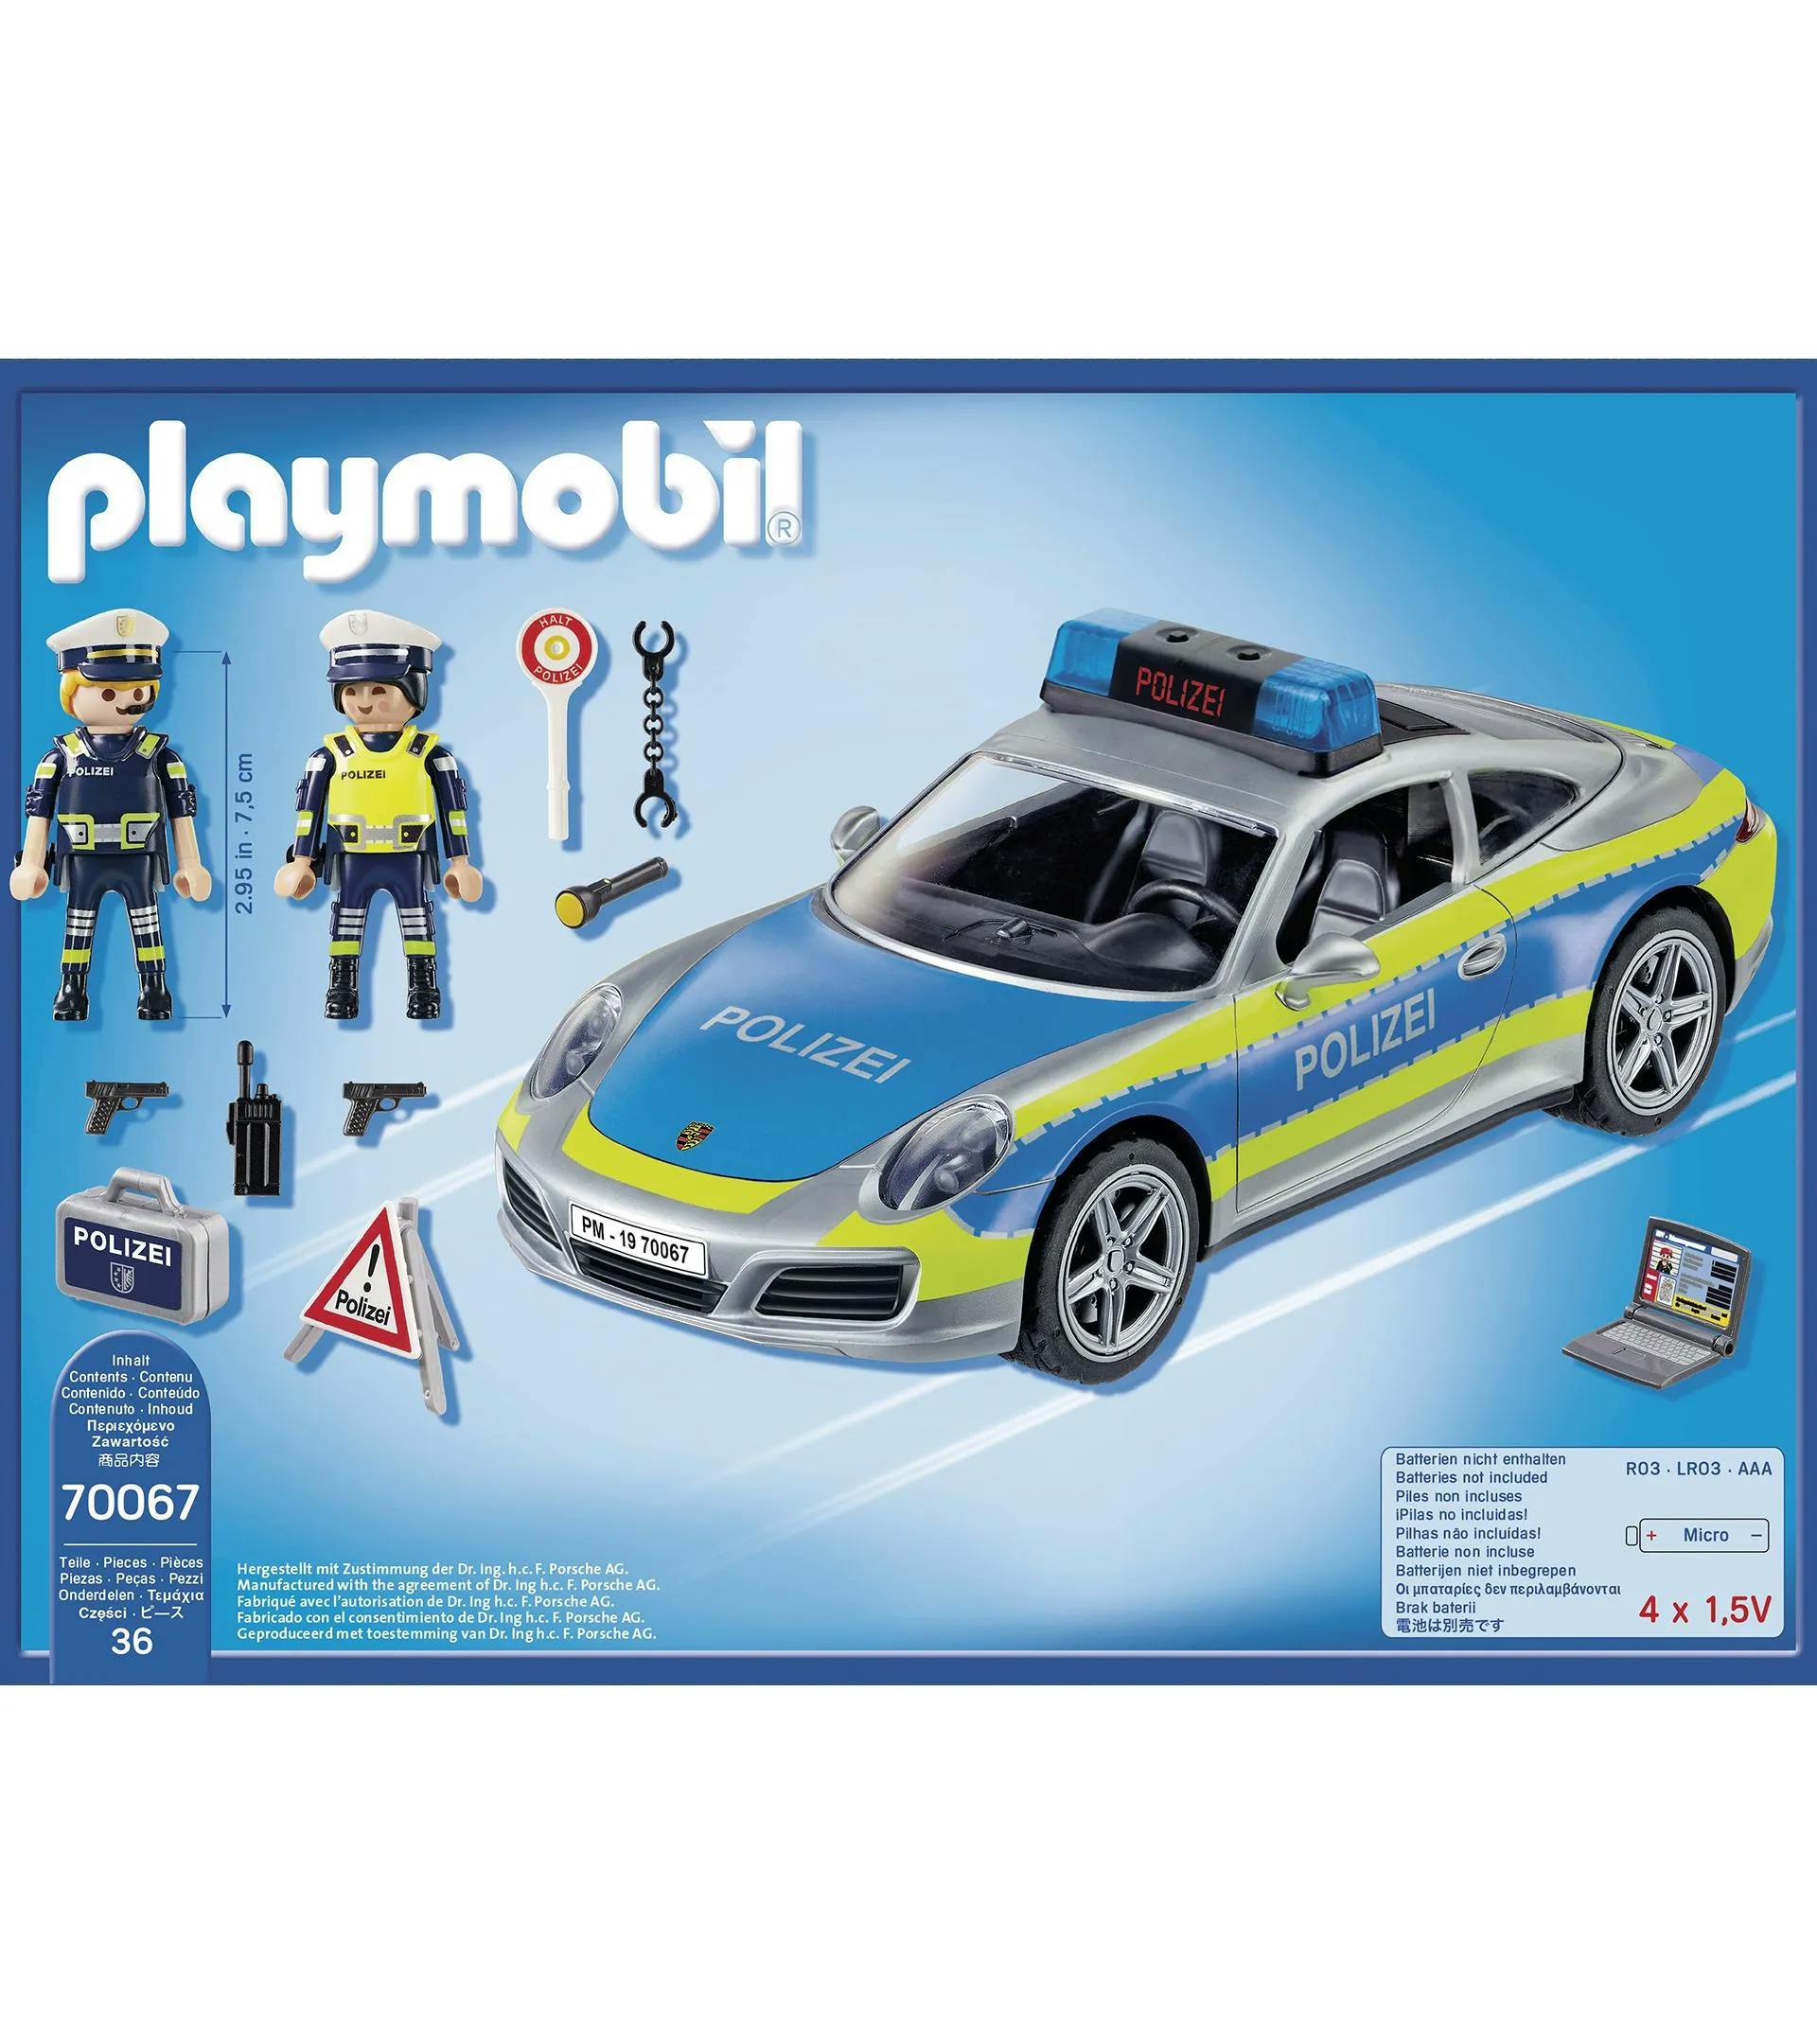 PLAYMOBIL playset – police 3